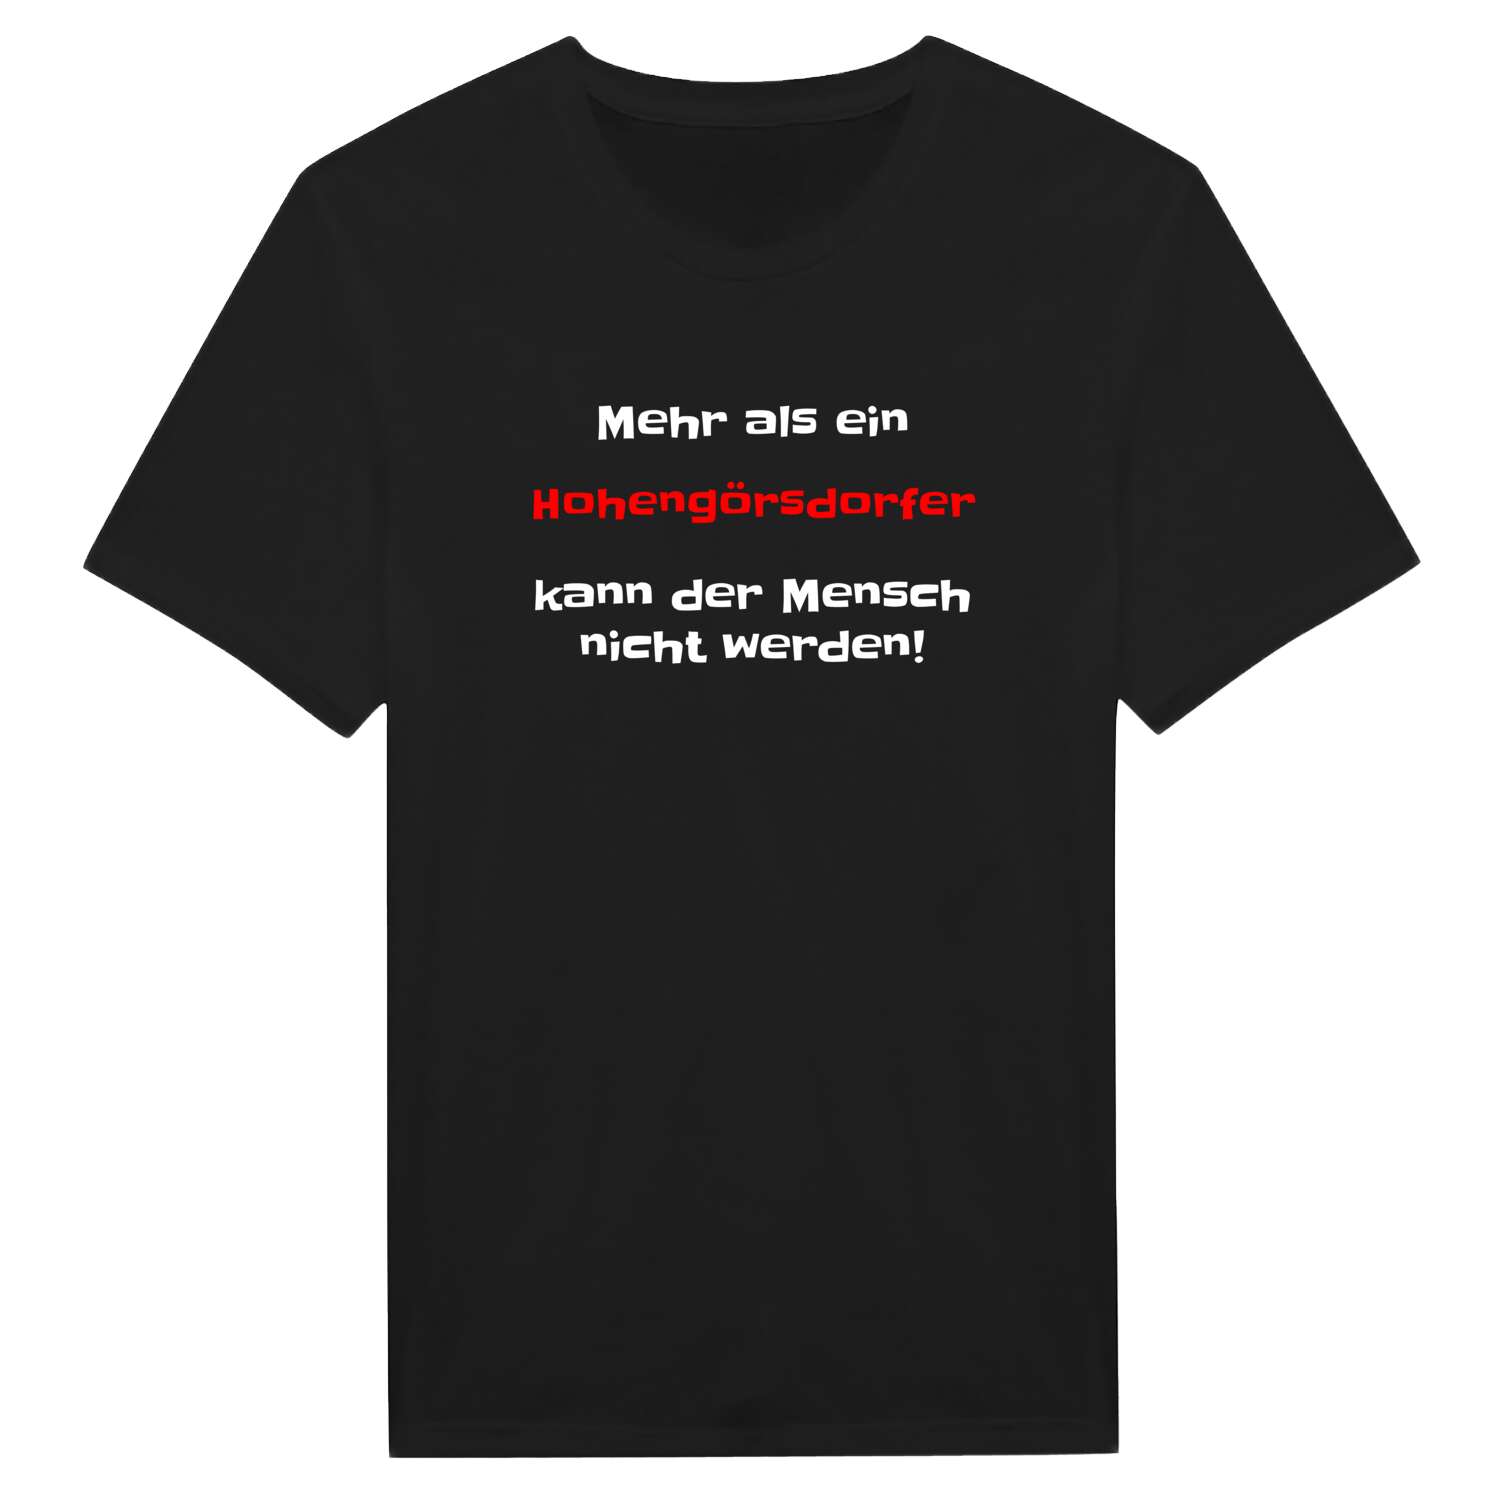 Hohengörsdorf T-Shirt »Mehr als ein«